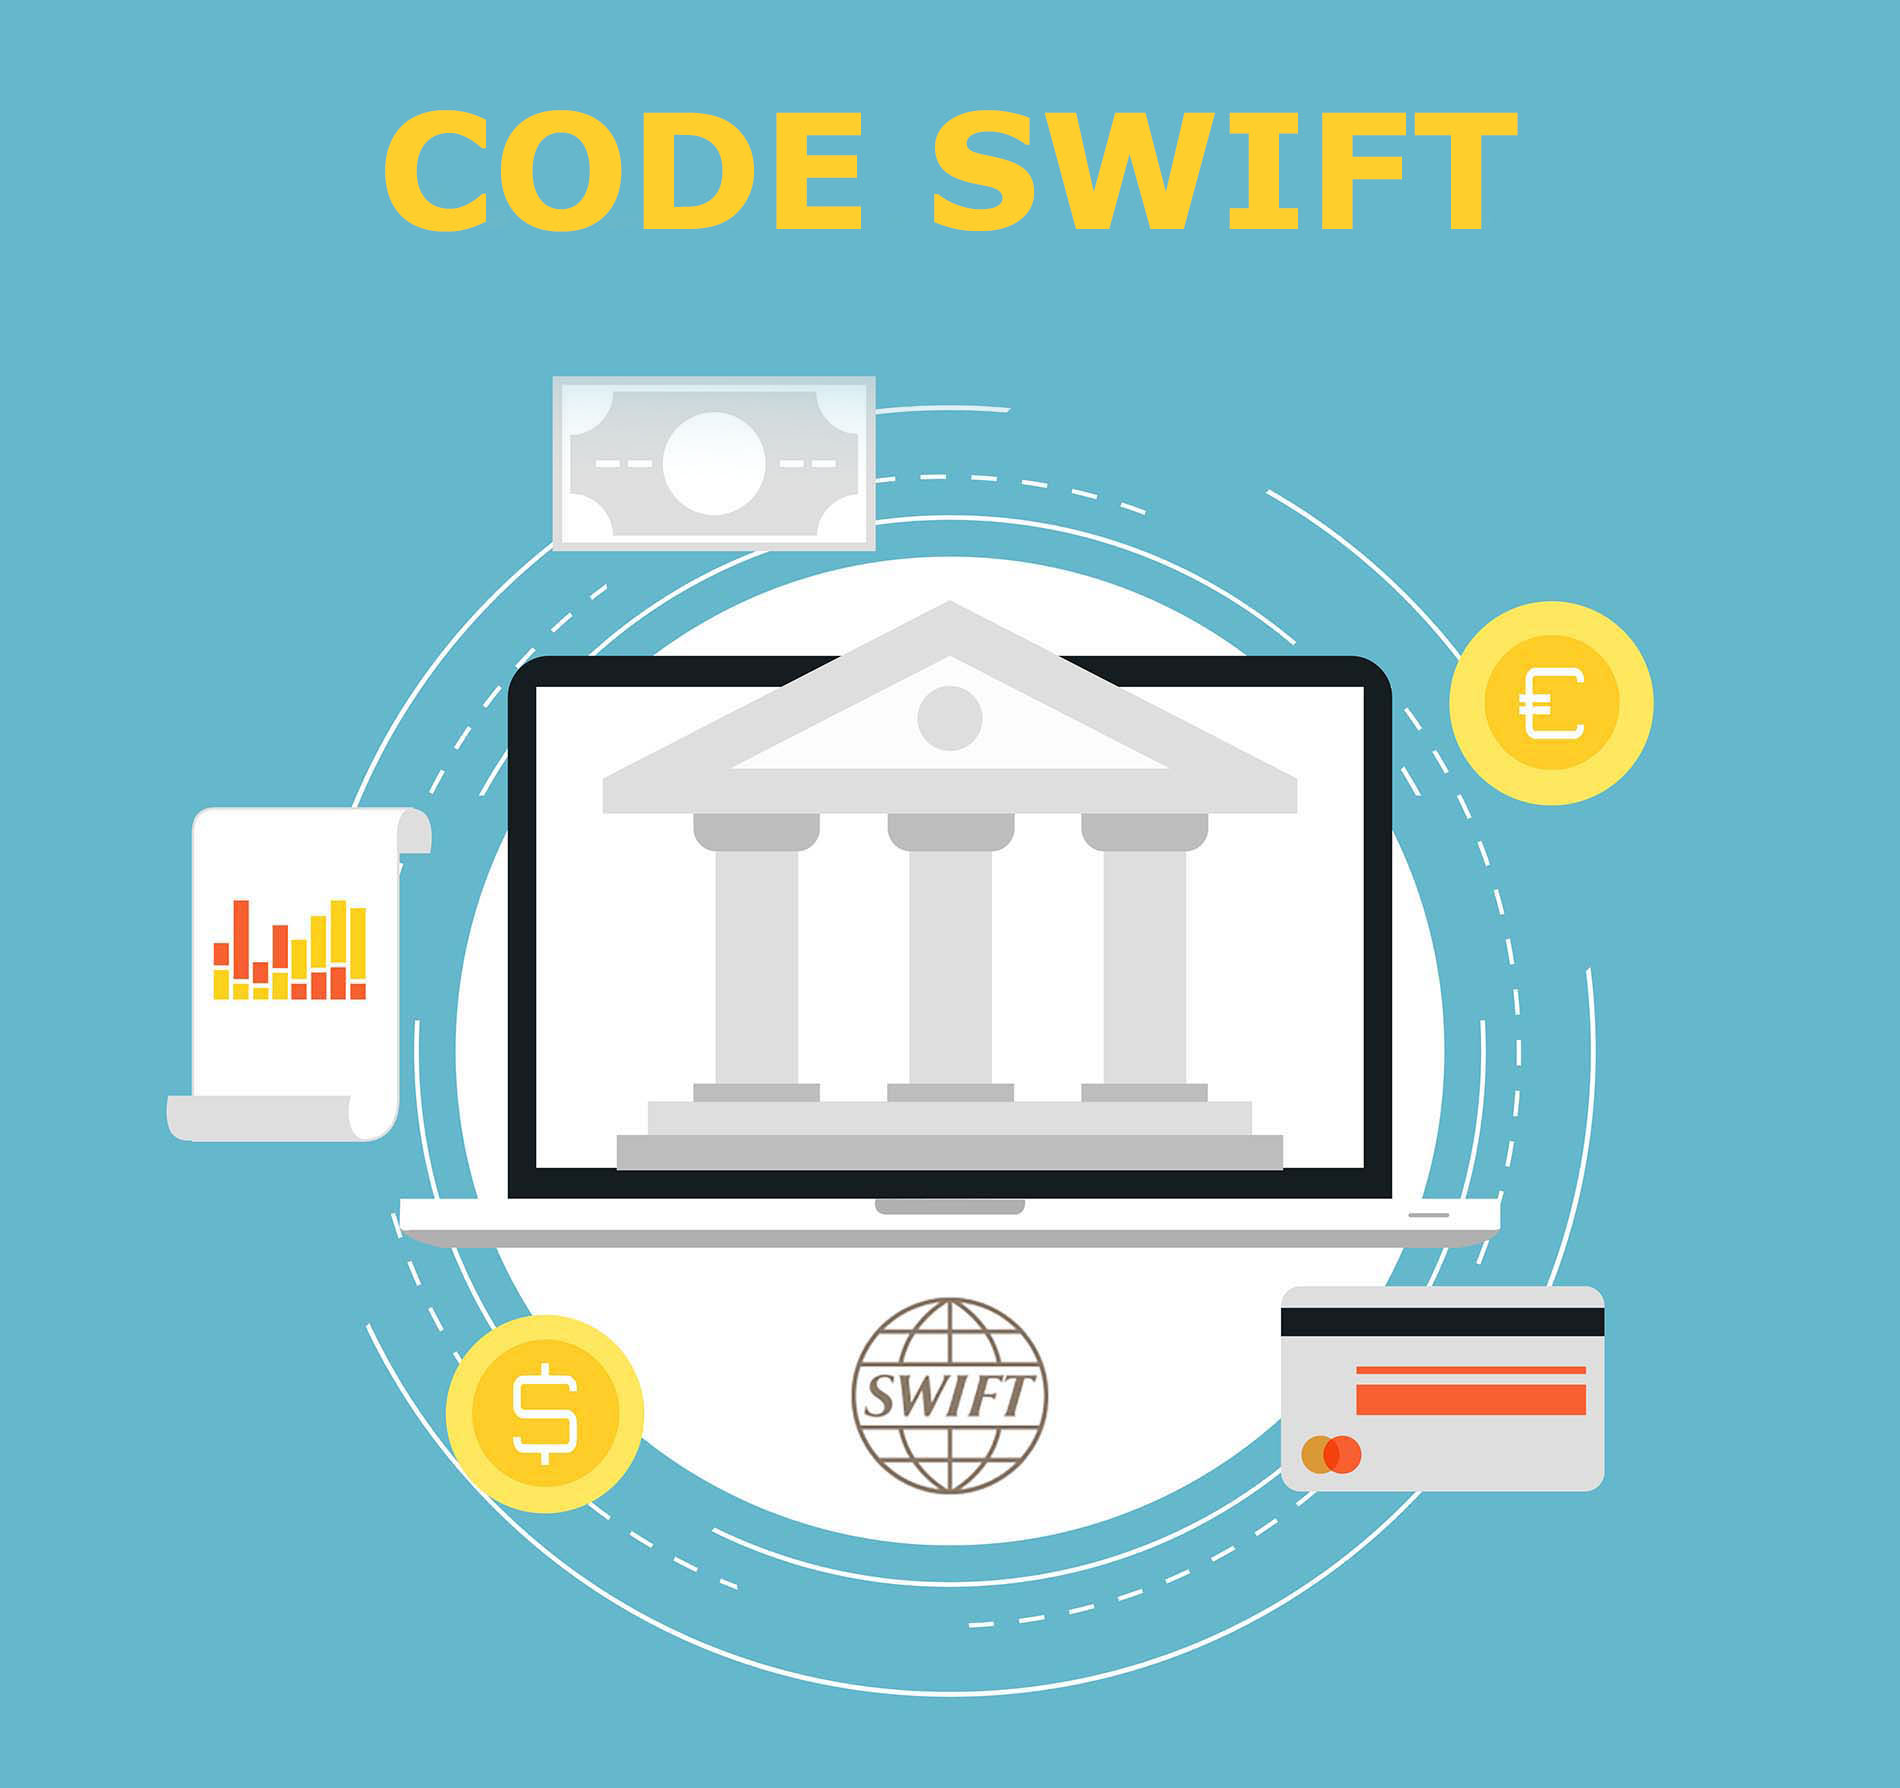 Définition d'un code swift